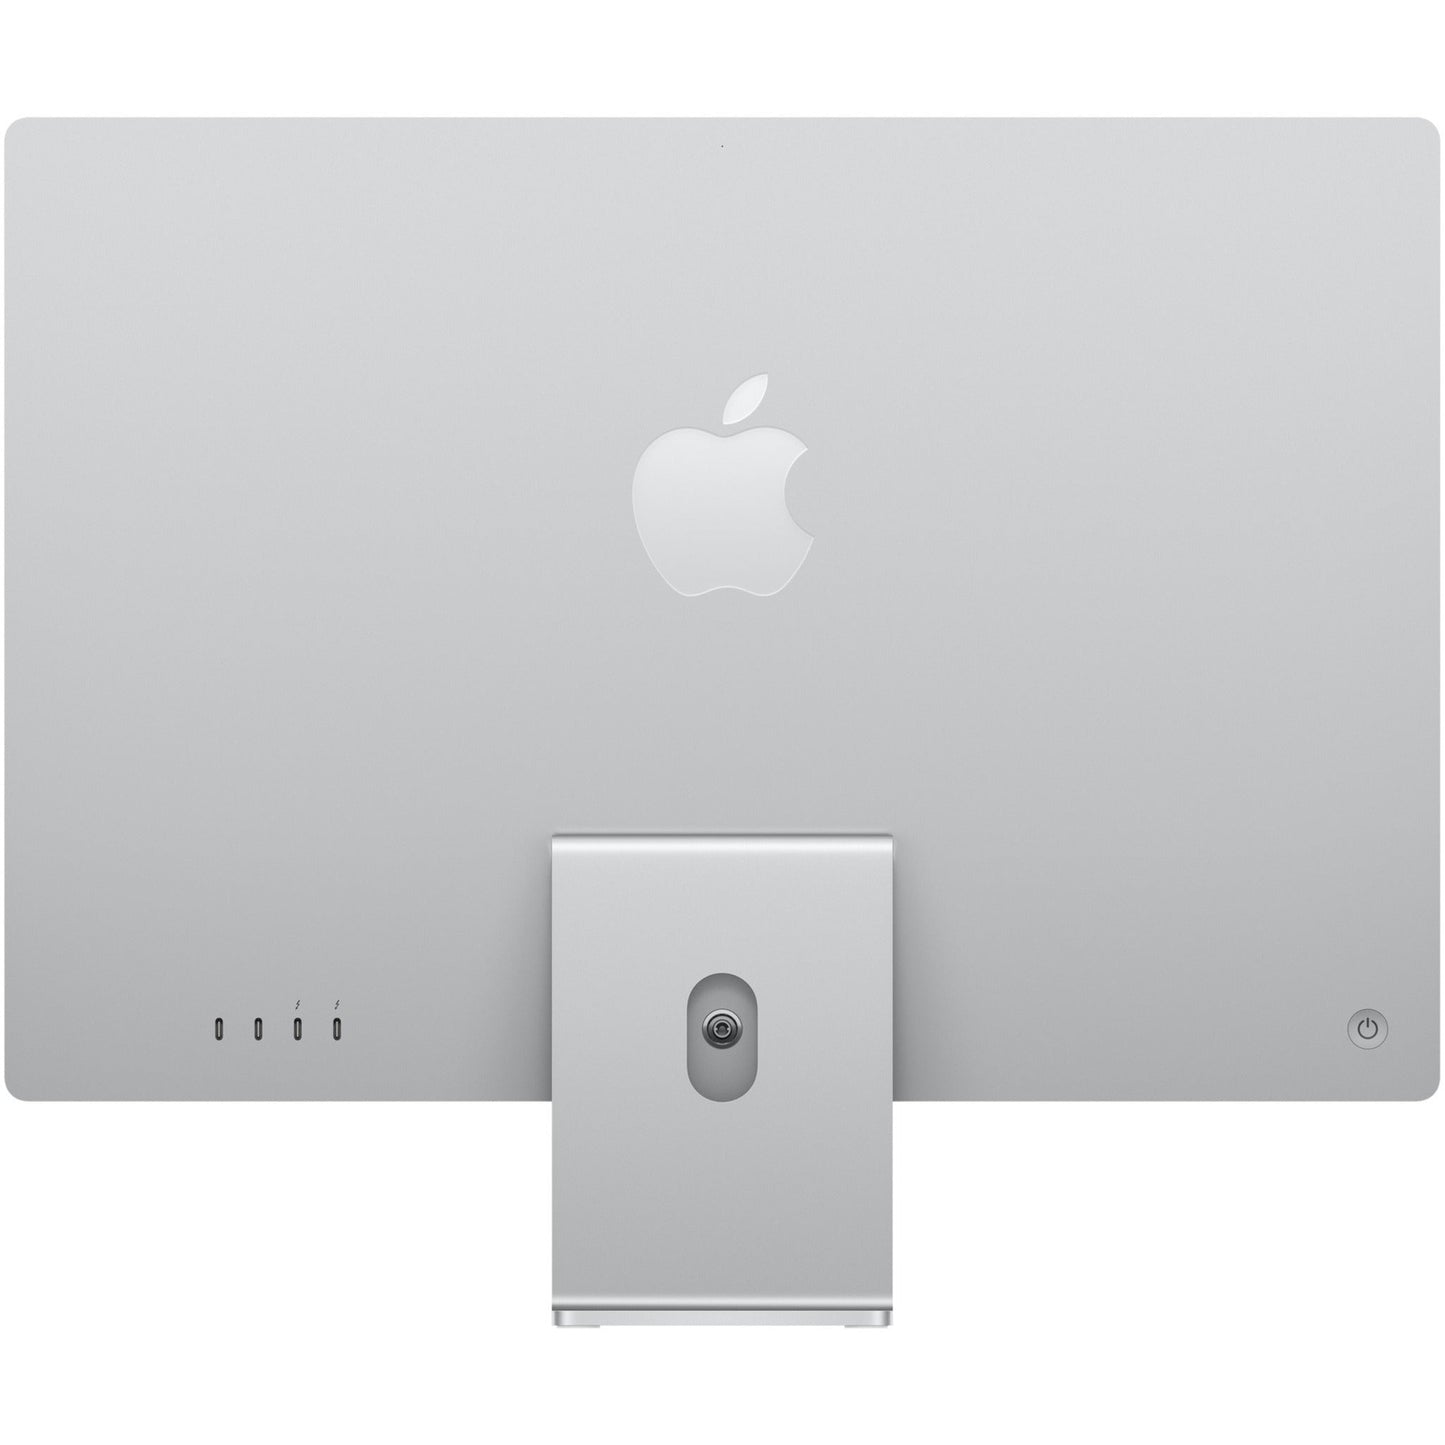 Apple iMac All-in-One Computer - Apple M1 Octa-core (8 Core) - 16 GB RAM - 256 GB SSD - 24" 4.5K 4480 x 2520 - Desktop - Silver